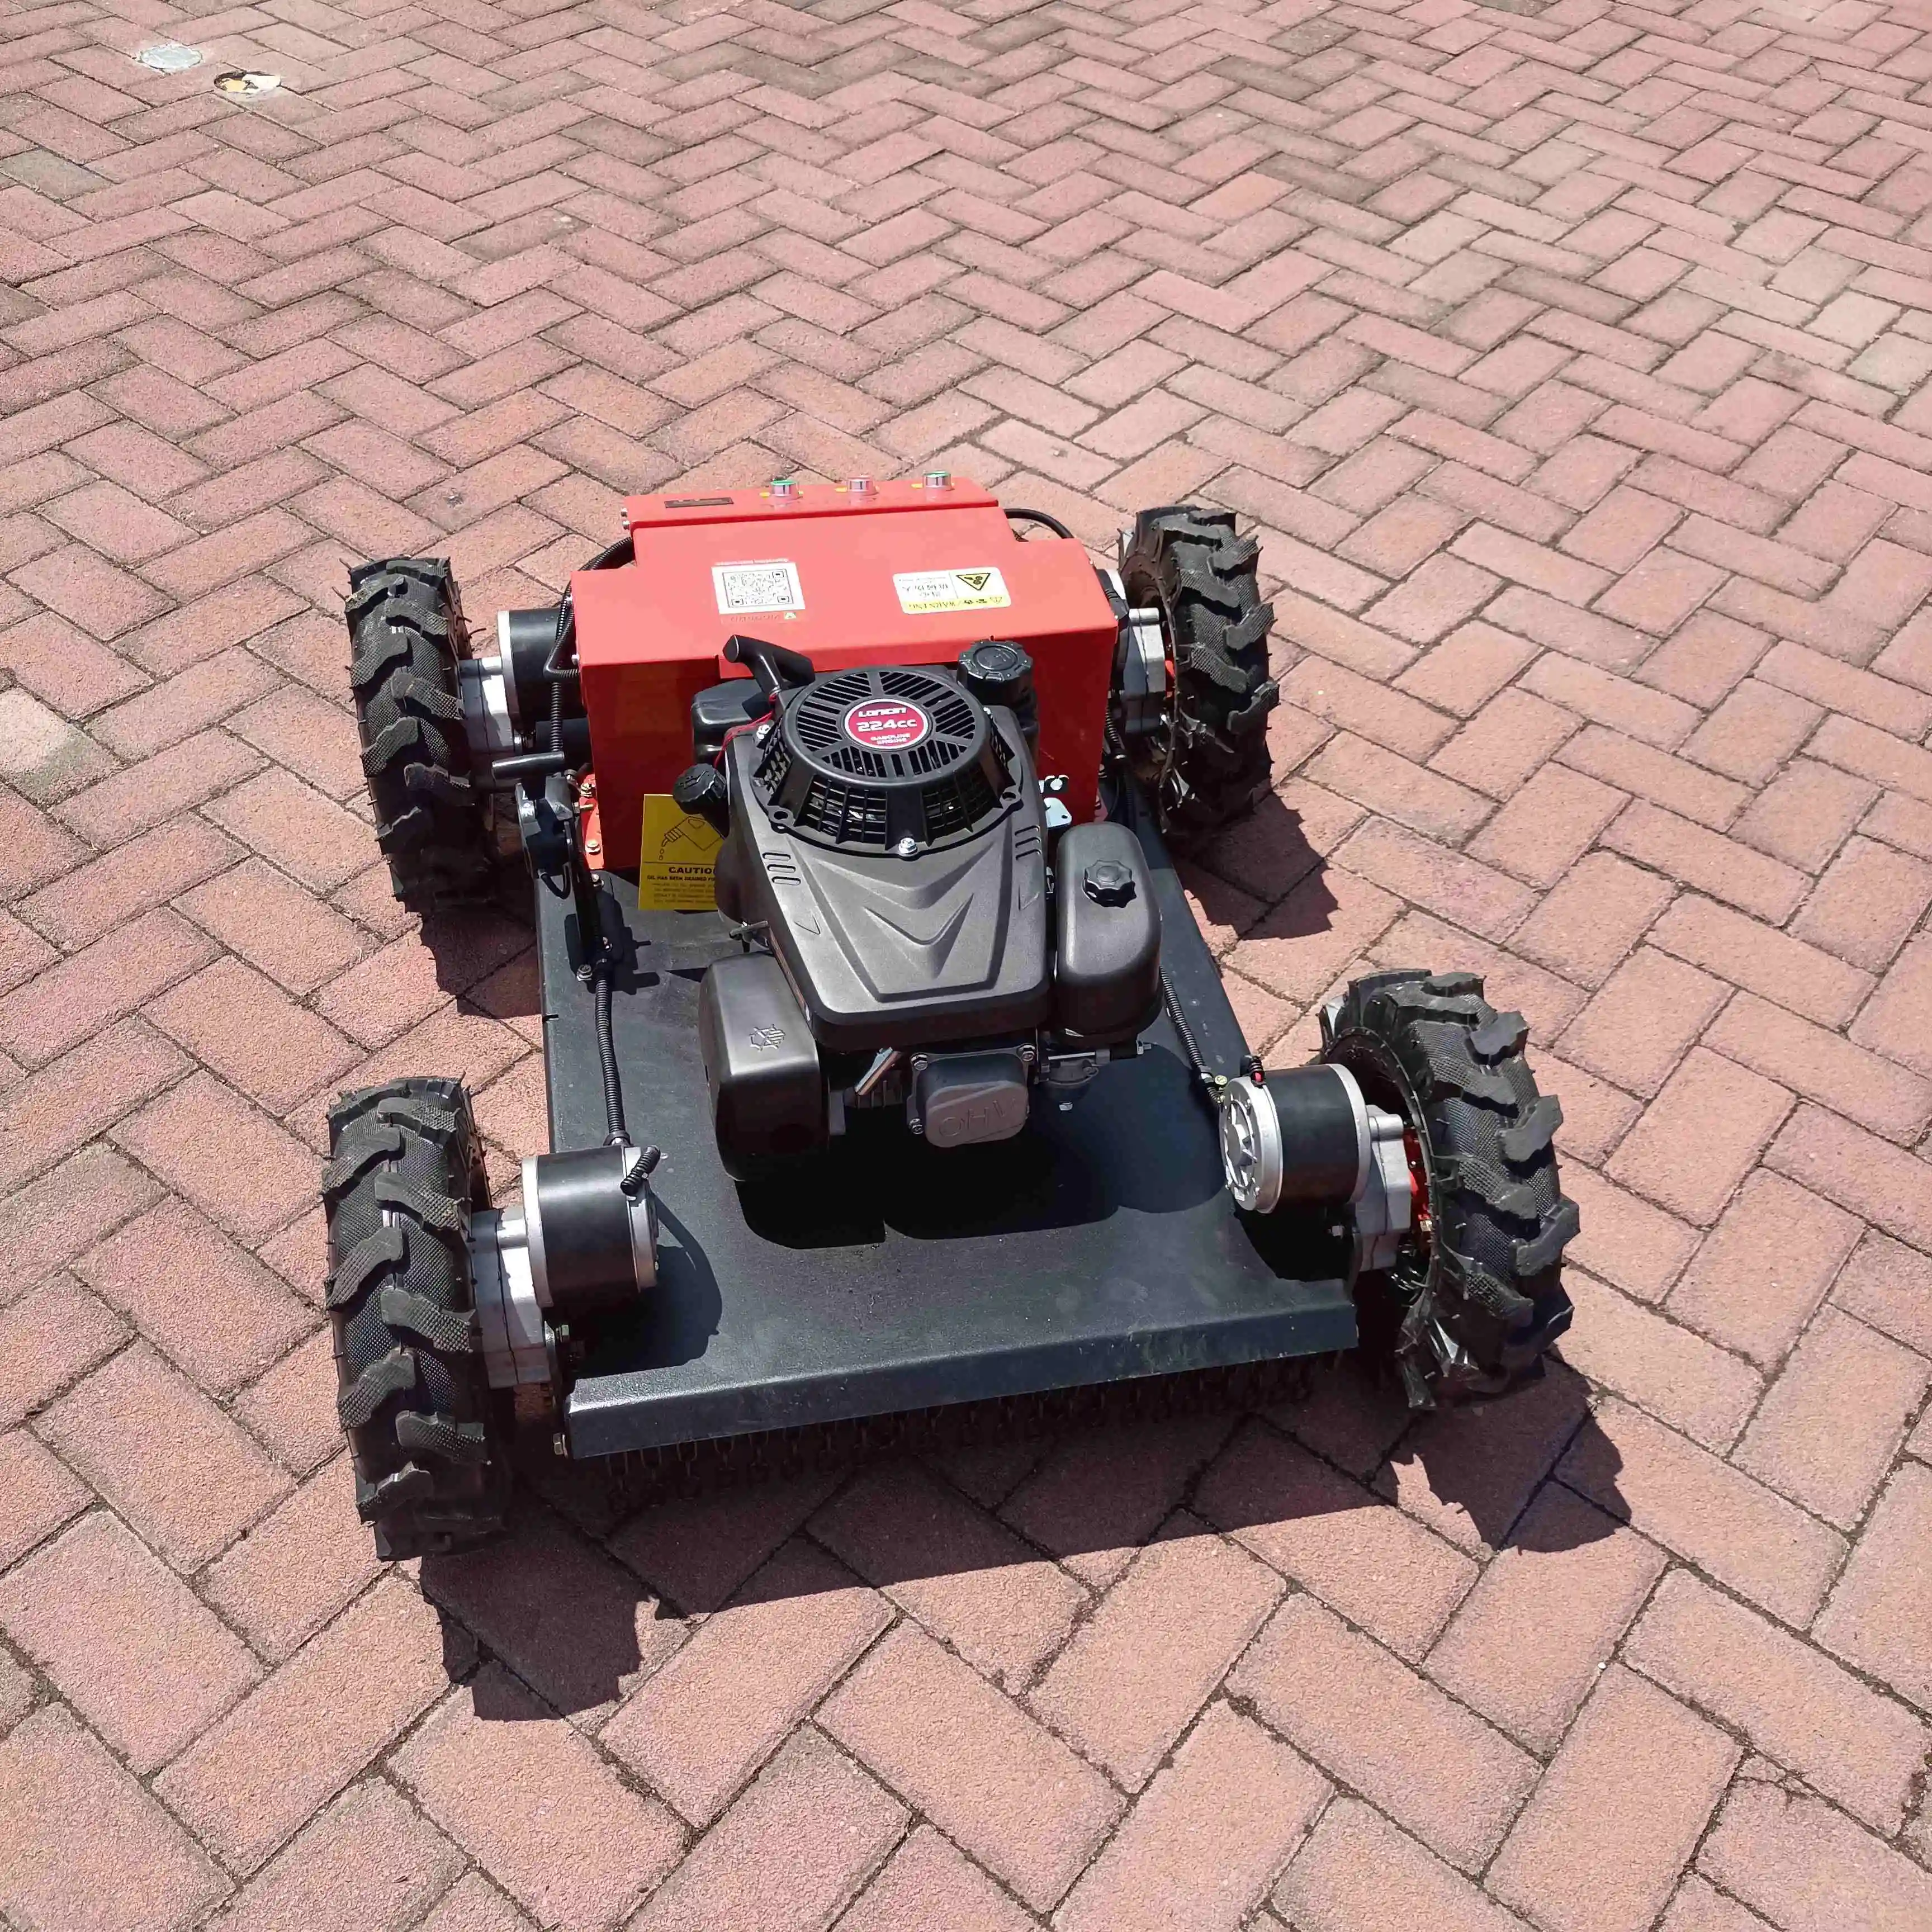 Joyance Nuevo Robot Cortacésped Con 4 Ruedas Gasolina De Alta Calidad Control Remoto Mini Cortacésped